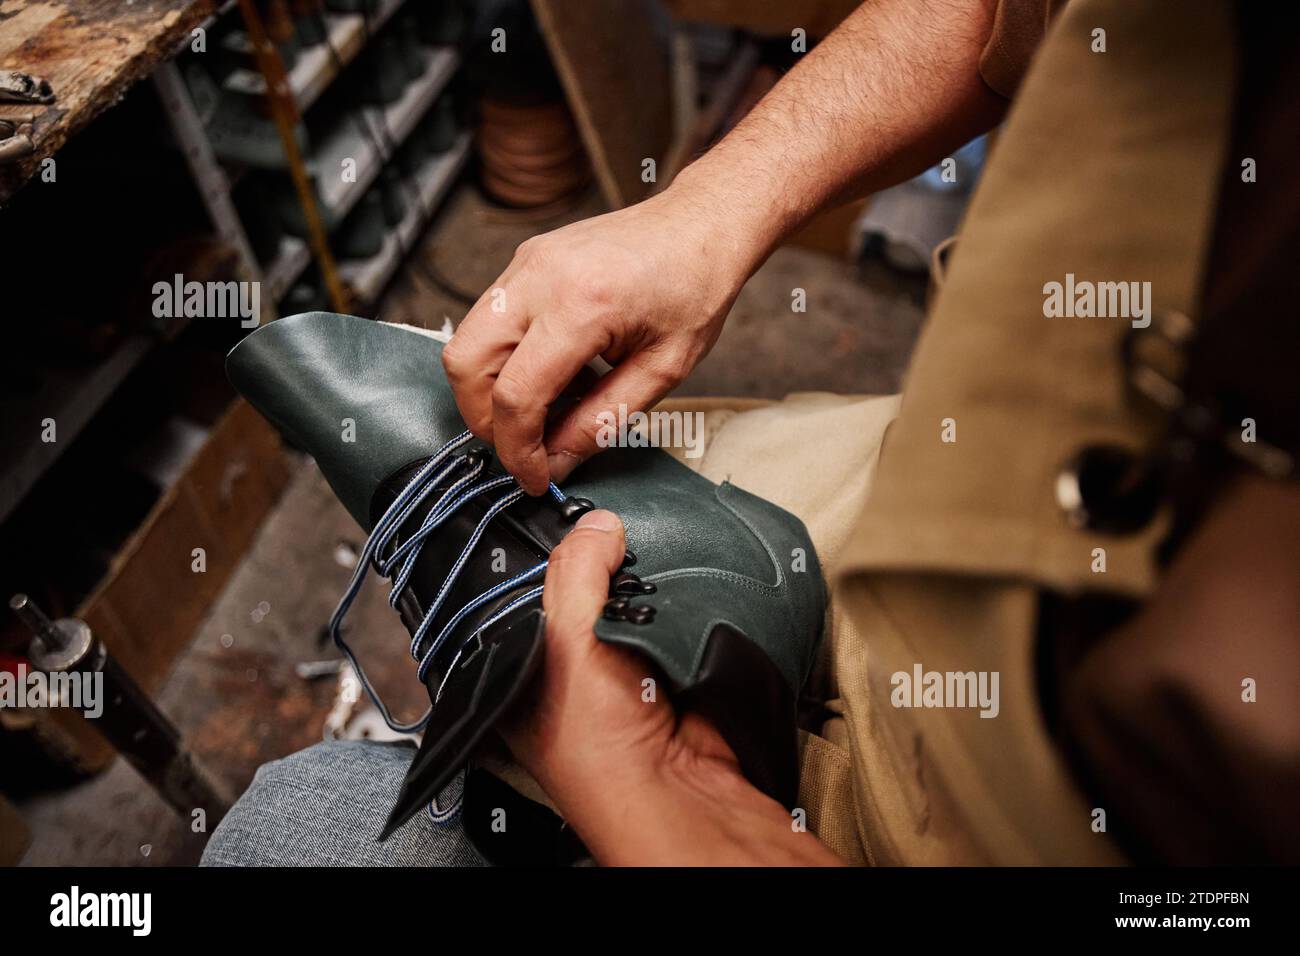 Hände eines professionellen männlichen Schuhmachers, der Schnürsenkel in den oberen Teil des unfertigen schwarzen Lederstiefels steckt, während er in der Werkstatt sitzt Stockfoto